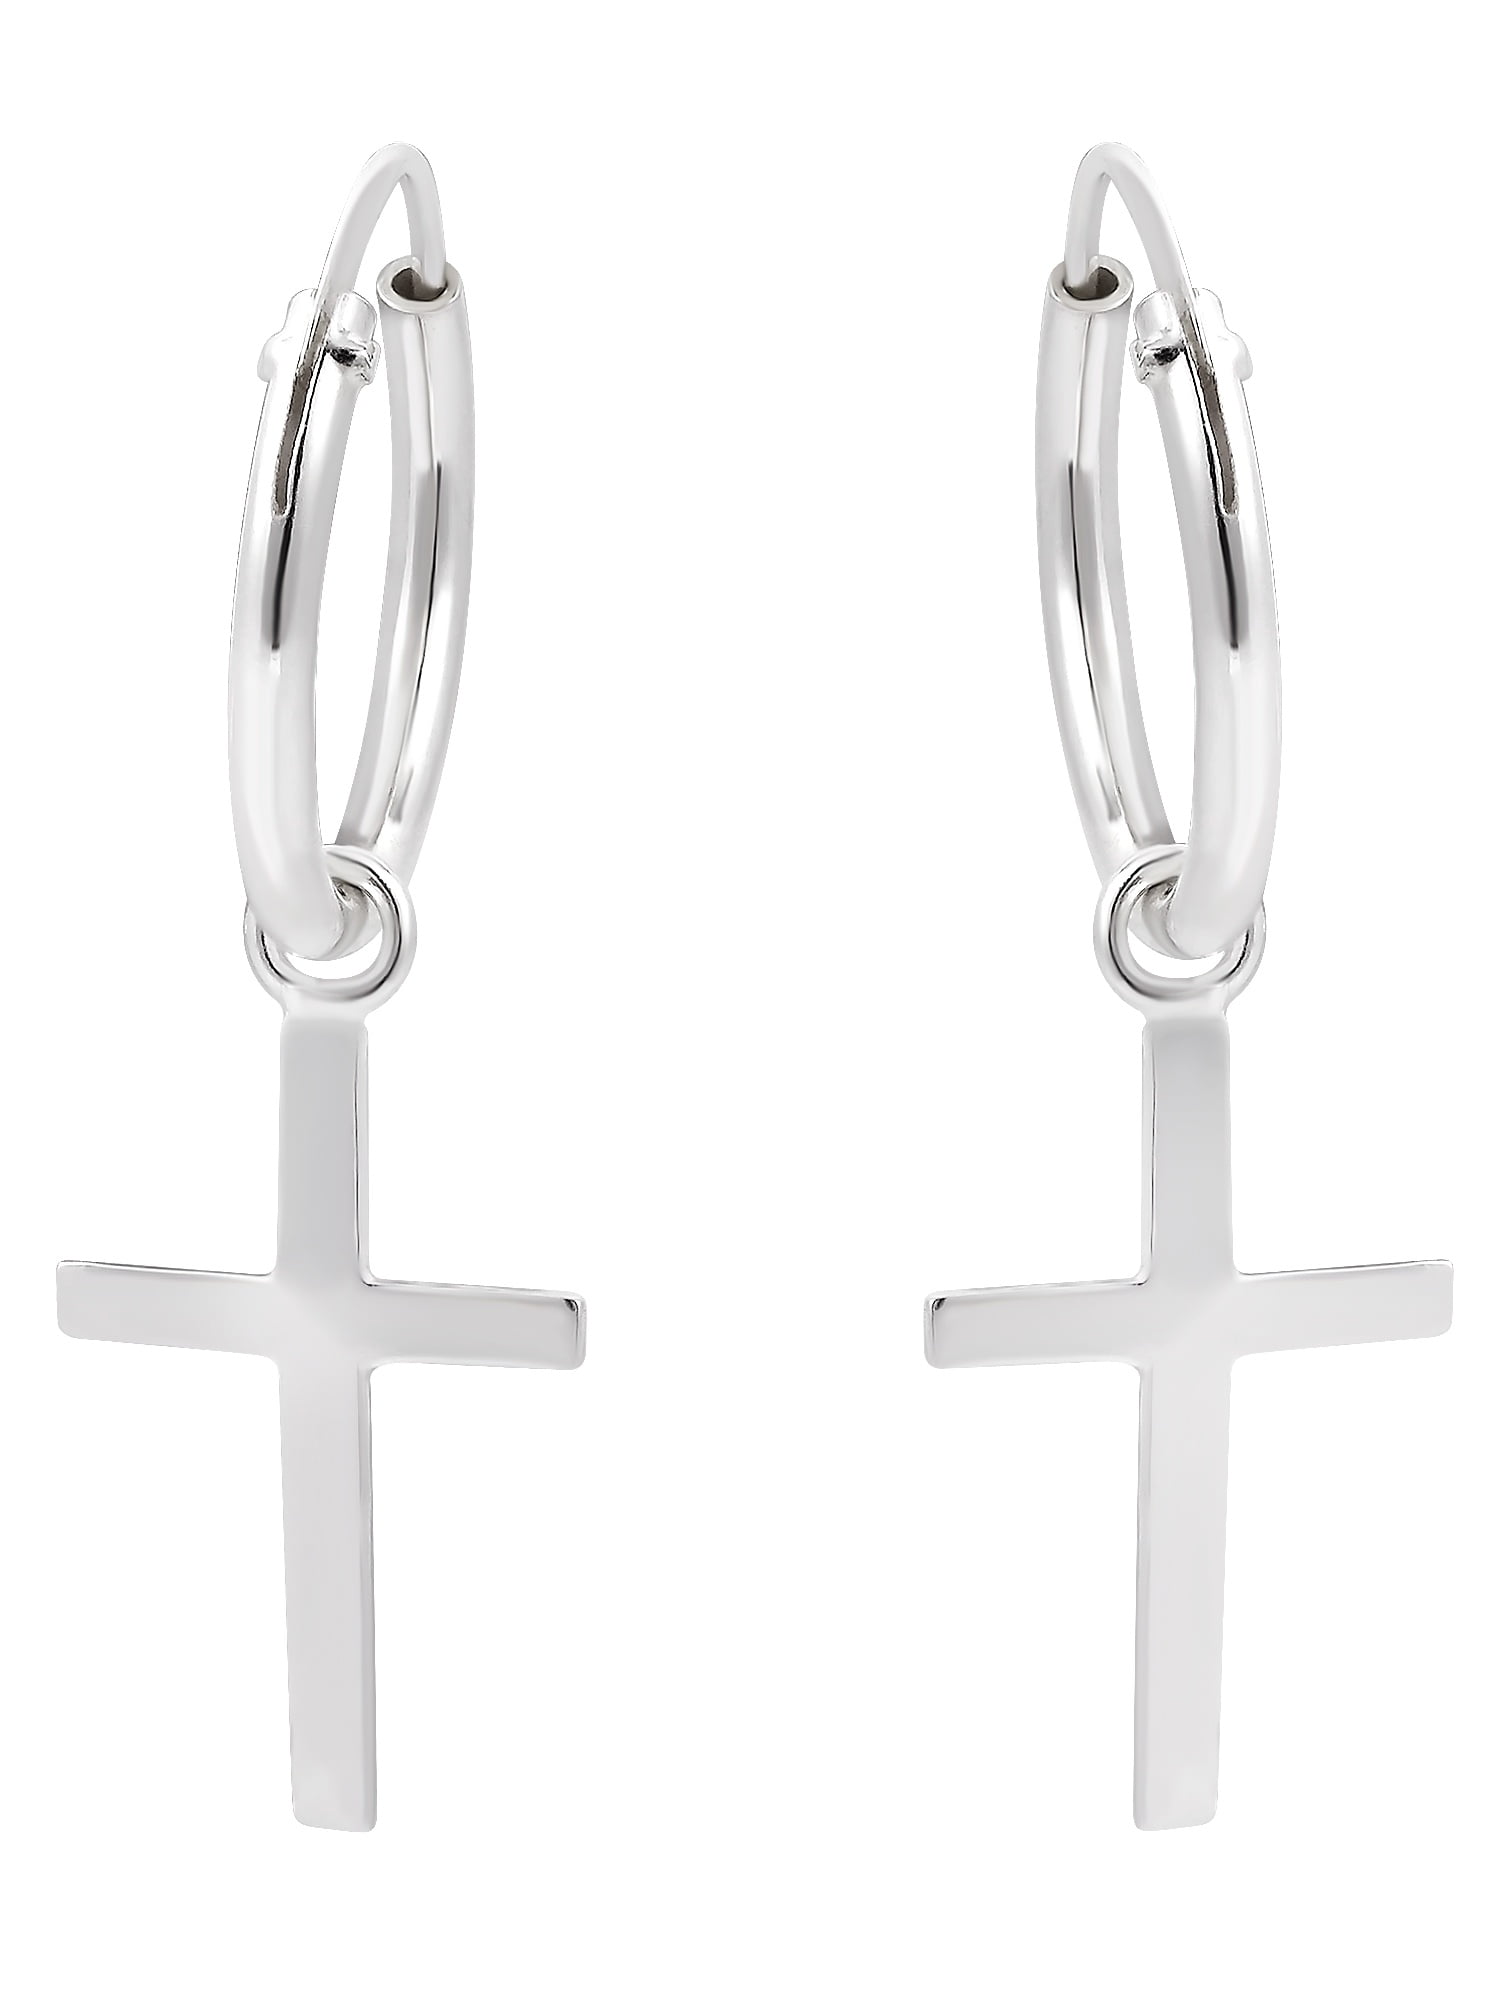 Basile Fine Gifts Stainless Steel Cross Ear Hoop Earrings Jewelry For Women Best Gift For Girls